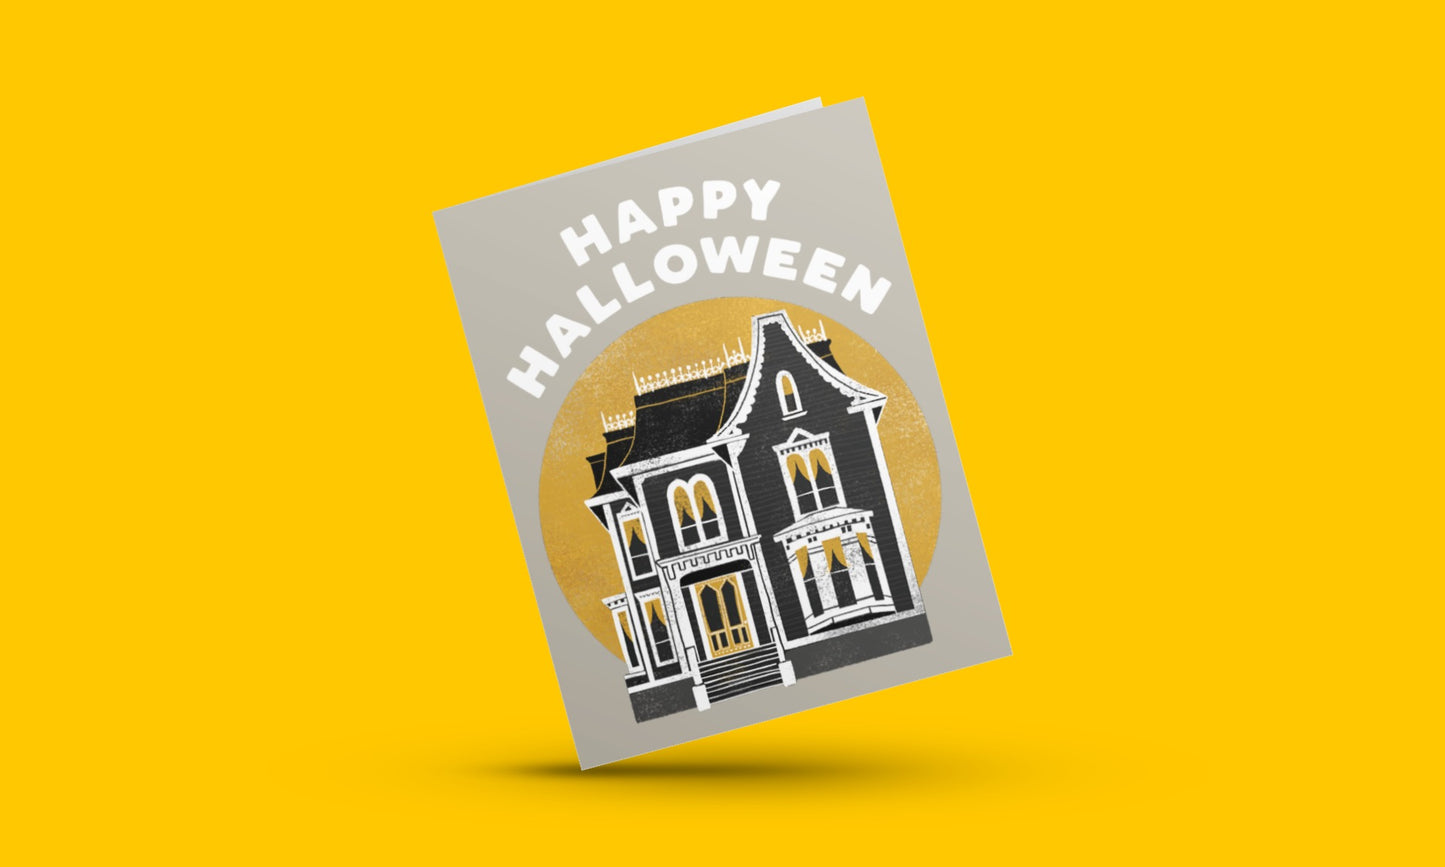 Happy Halloween (Spooky House) Card